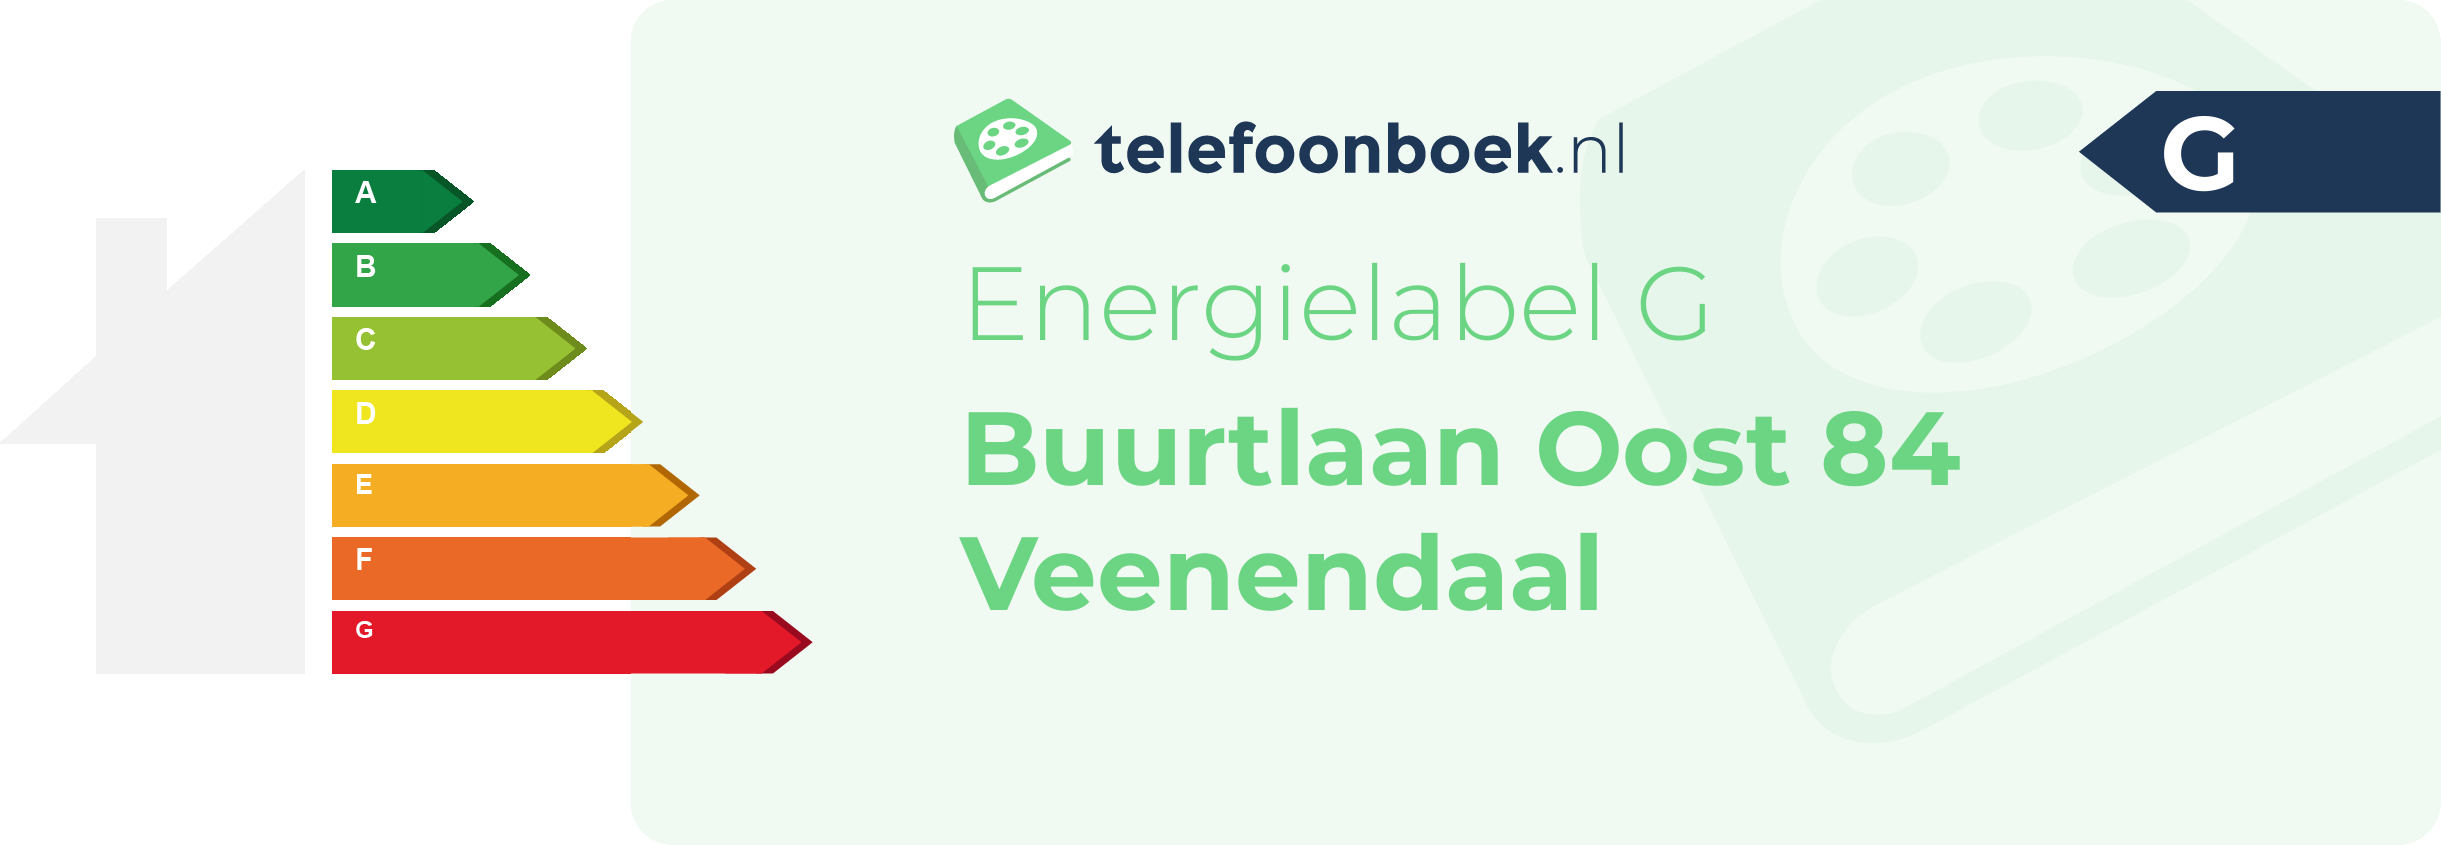 Energielabel Buurtlaan Oost 84 Veenendaal